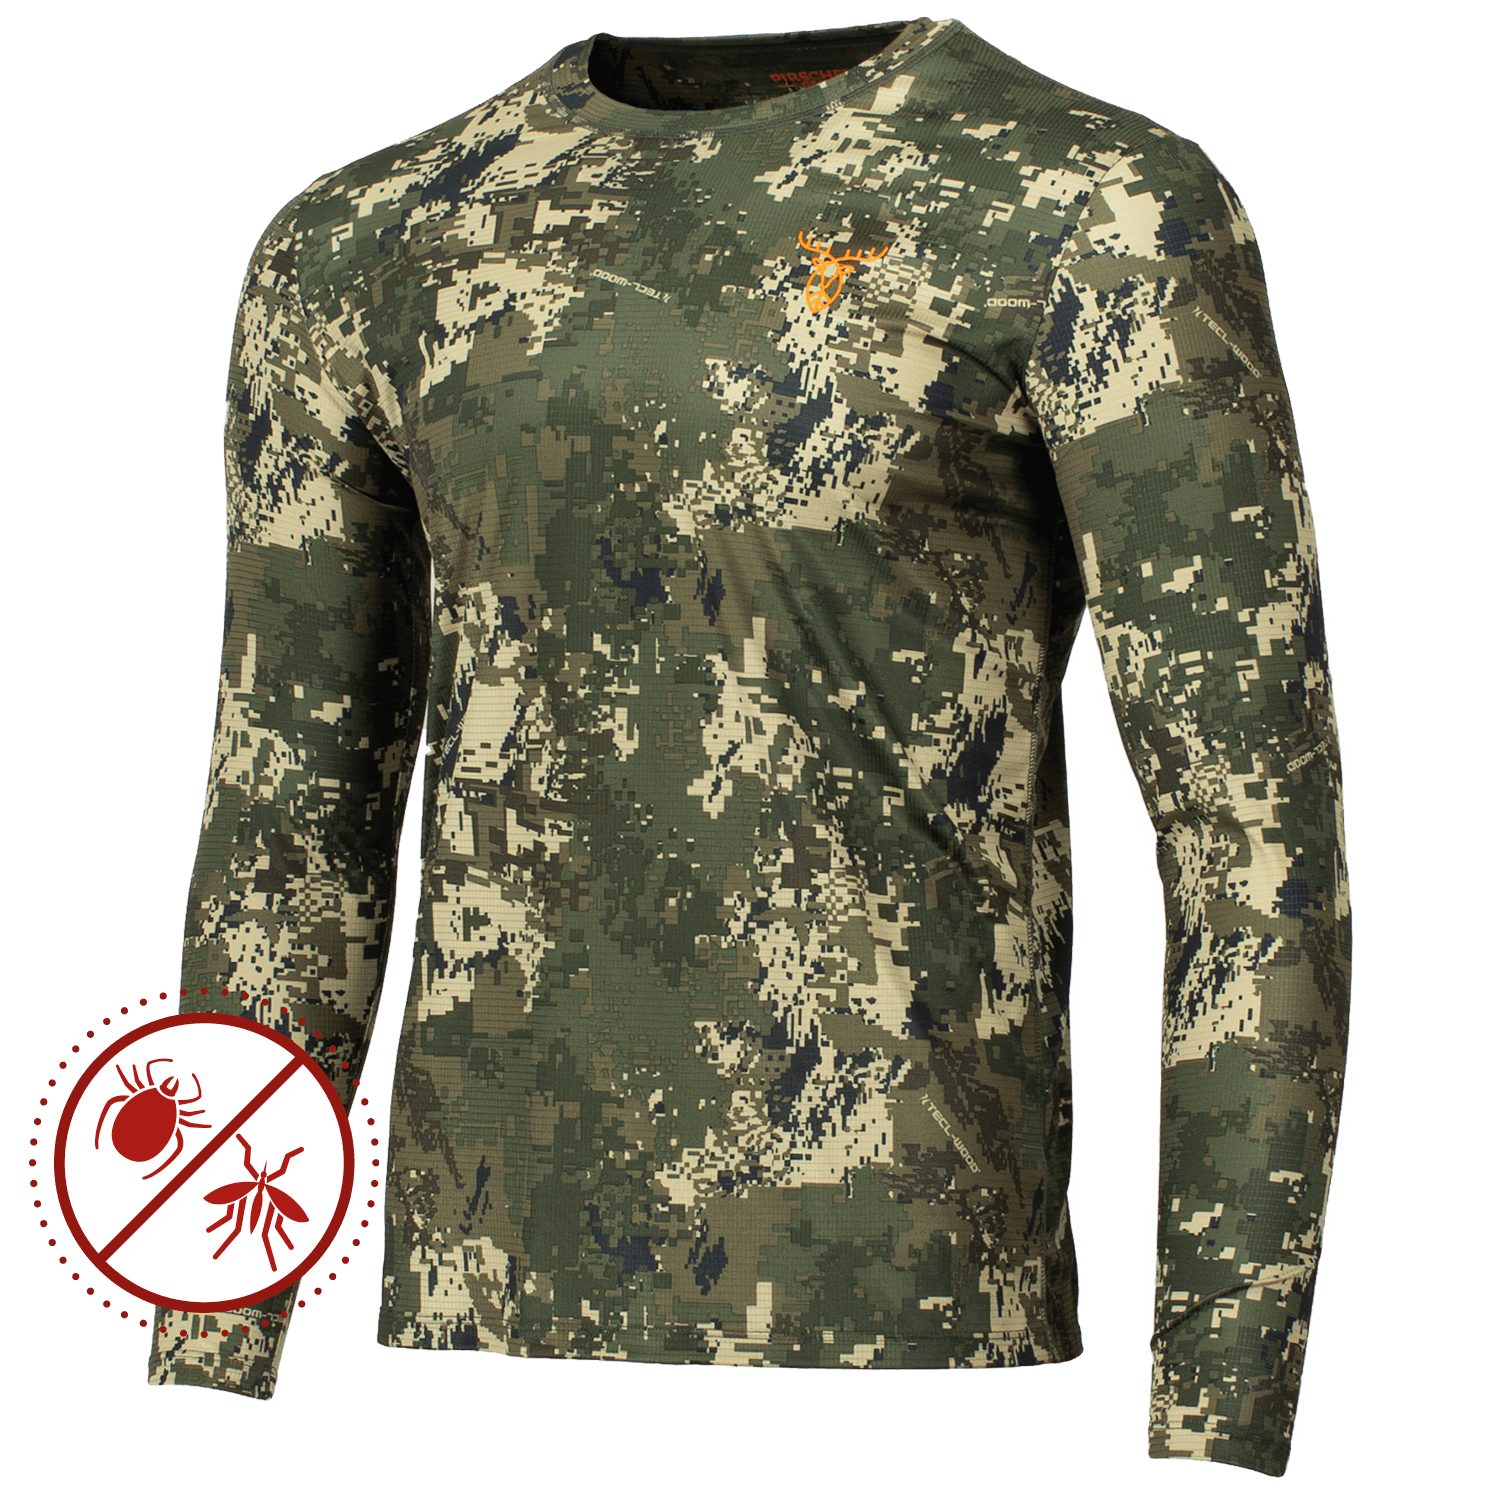  Pirscher Gear Ultralicht Tanatex LS Shirt (Optimax) - Jachtshirts